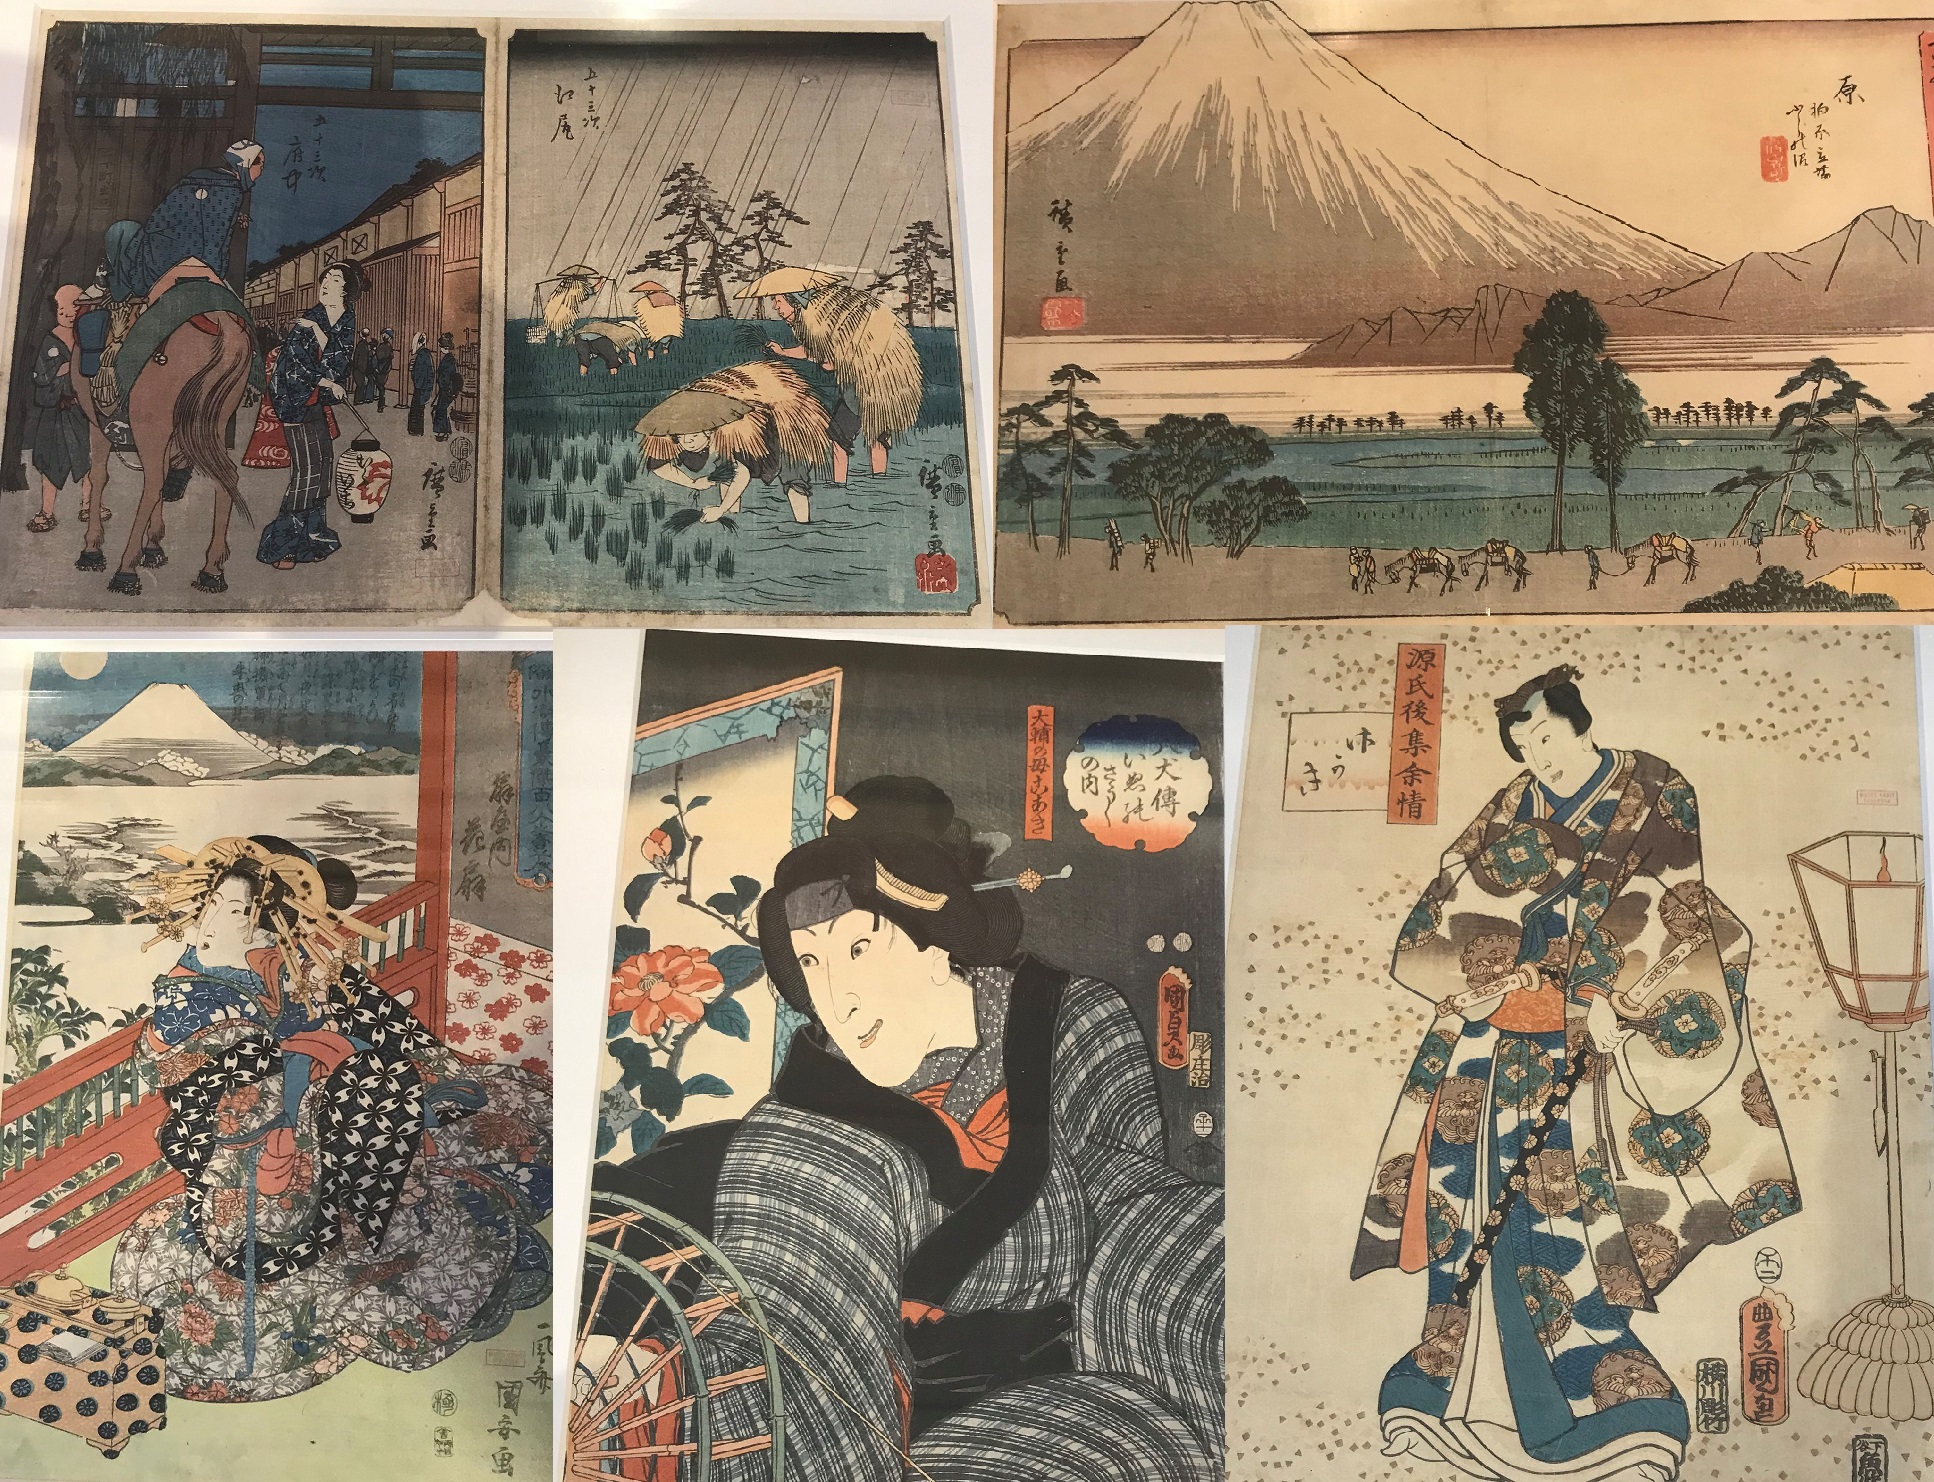 RESSOURCES/Les estampes japonaises